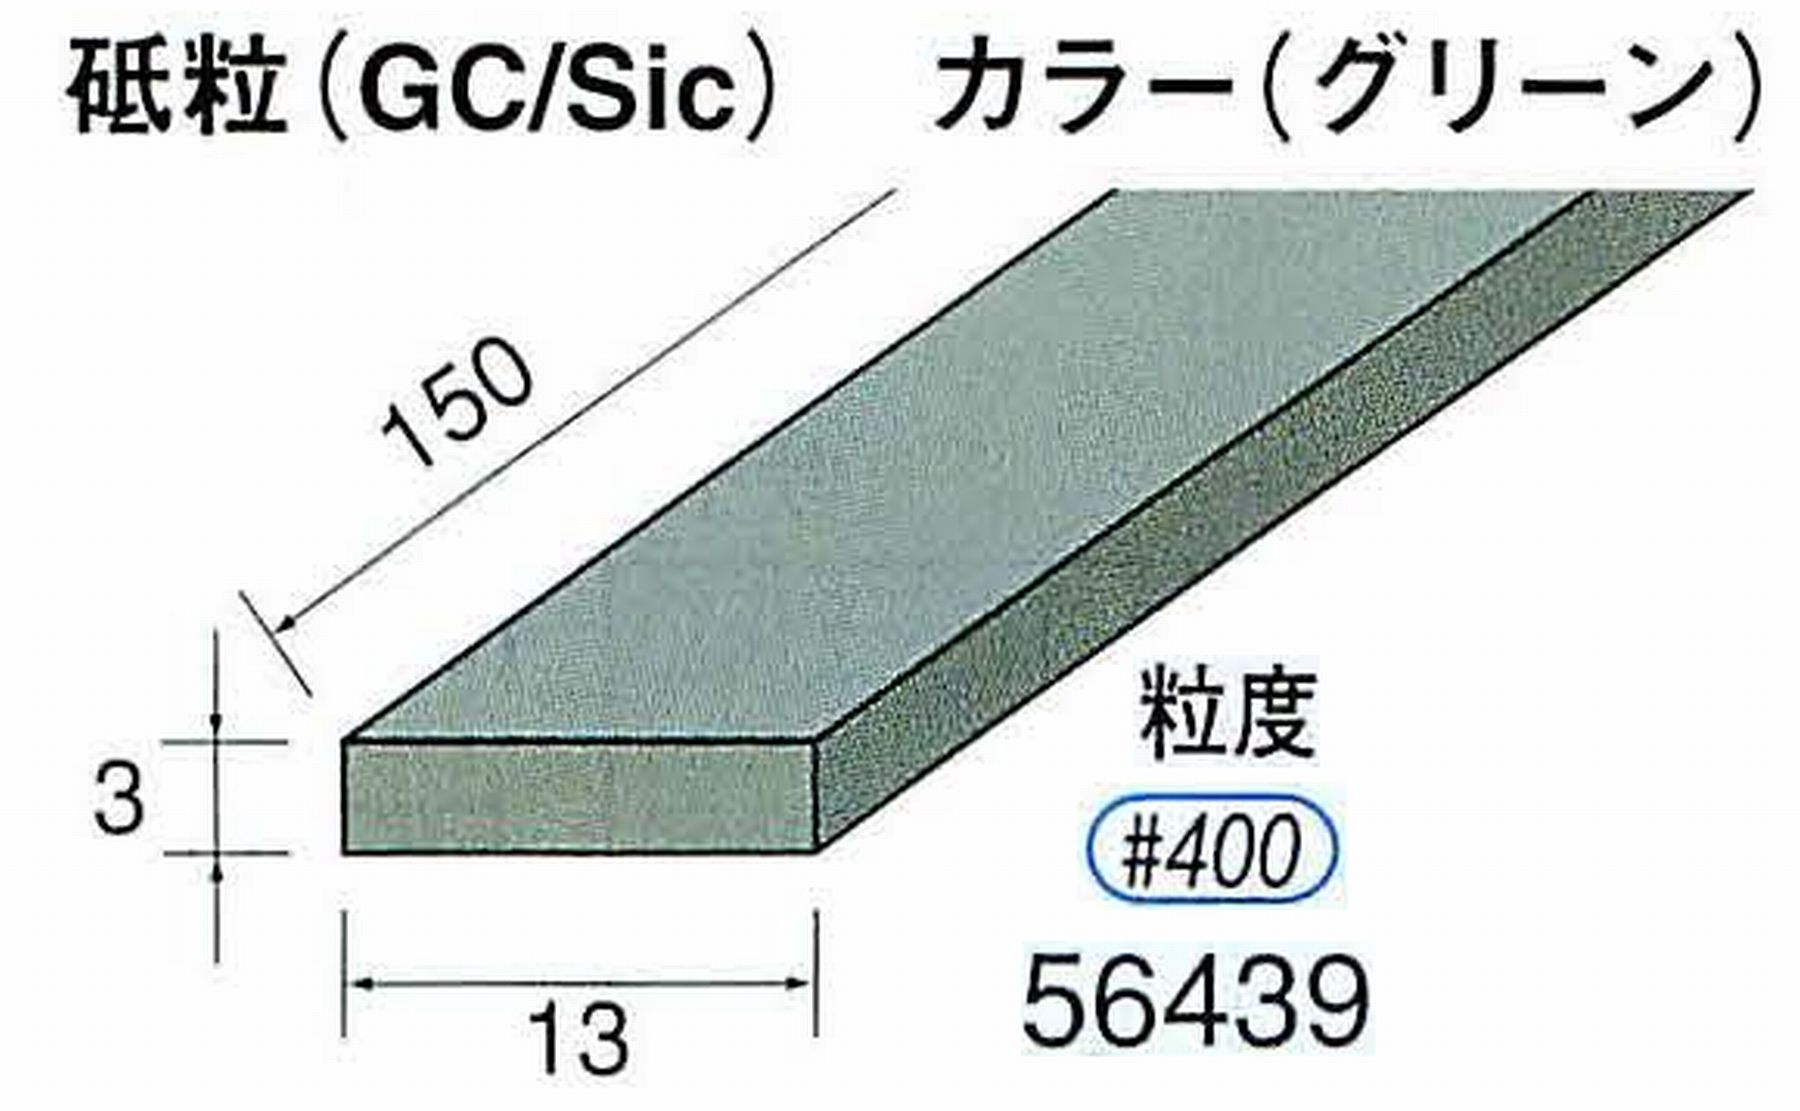 ナカニシ/NAKANISHI スティック砥石 グリーン・フィニッシュシリーズ 砥粒(GC/Sic) 56439